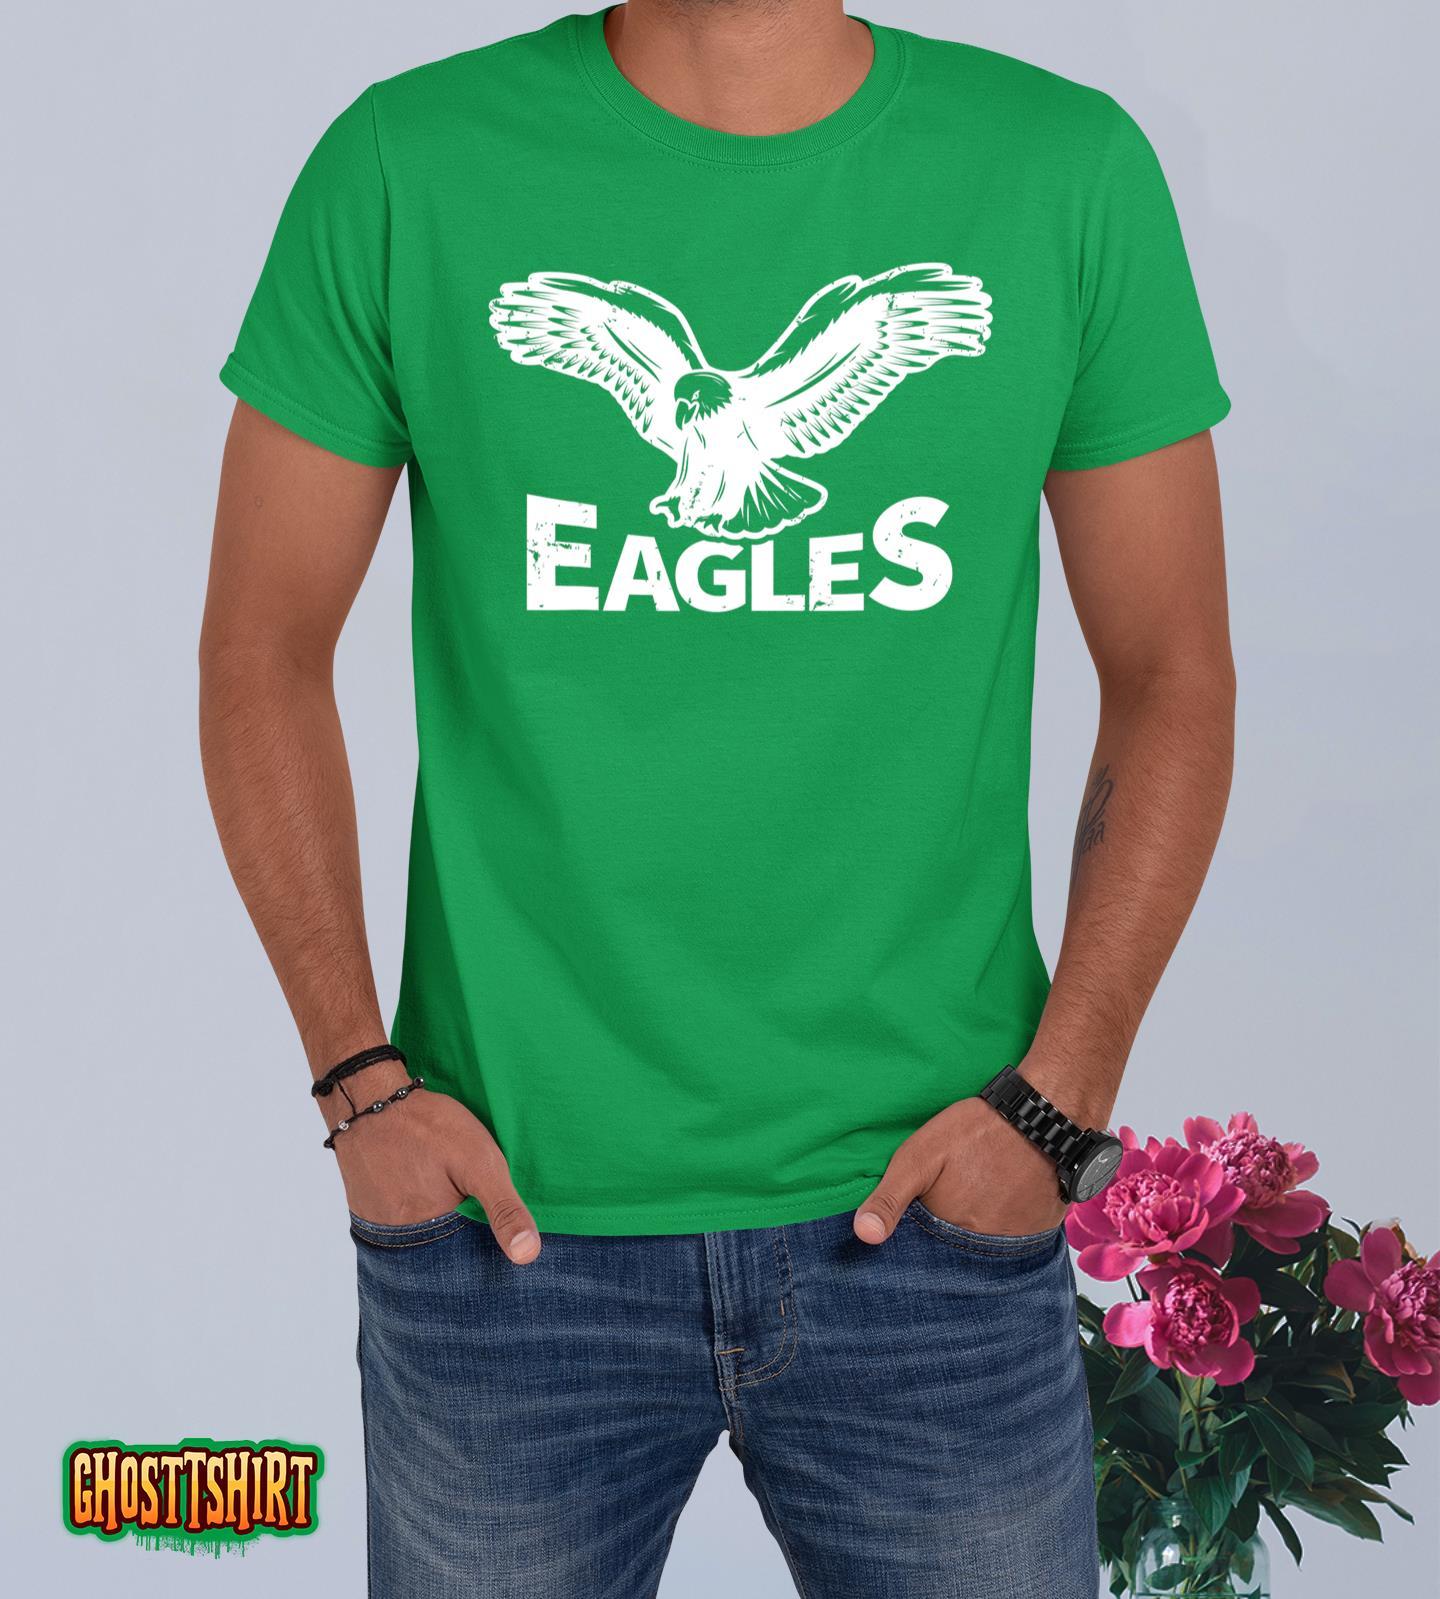 Eagles Fly Vintage Eagles Flying Bird Inspirational T-Shirt